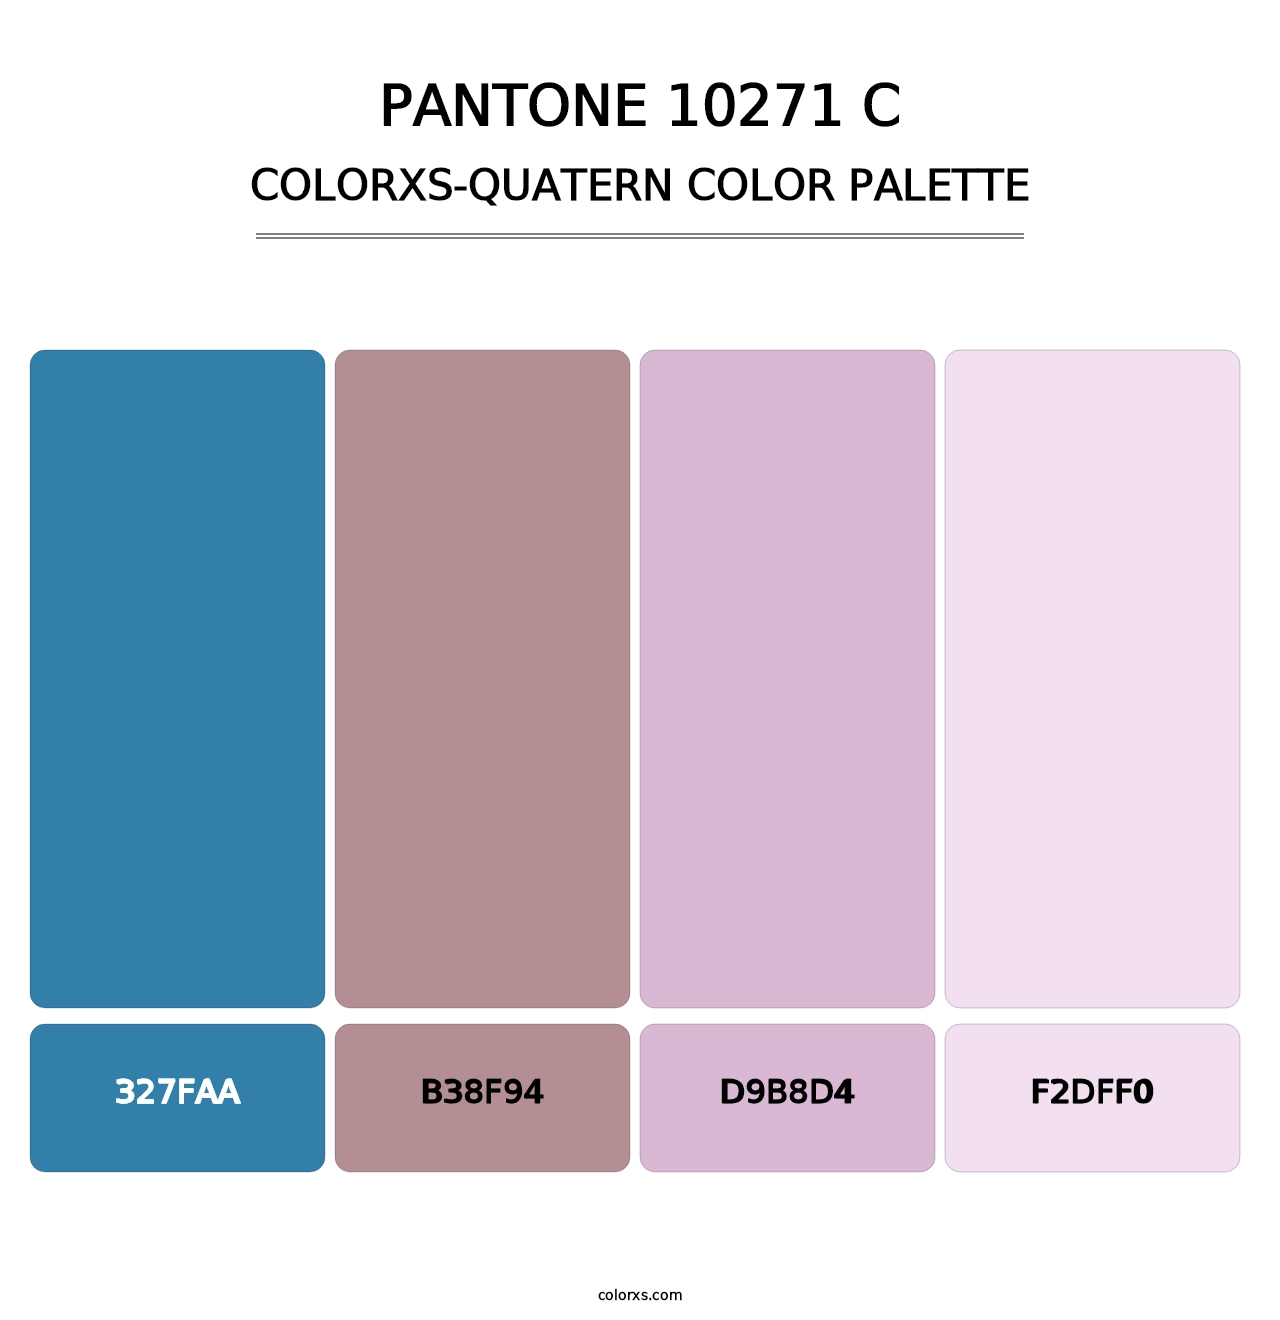 PANTONE 10271 C - Colorxs Quatern Palette